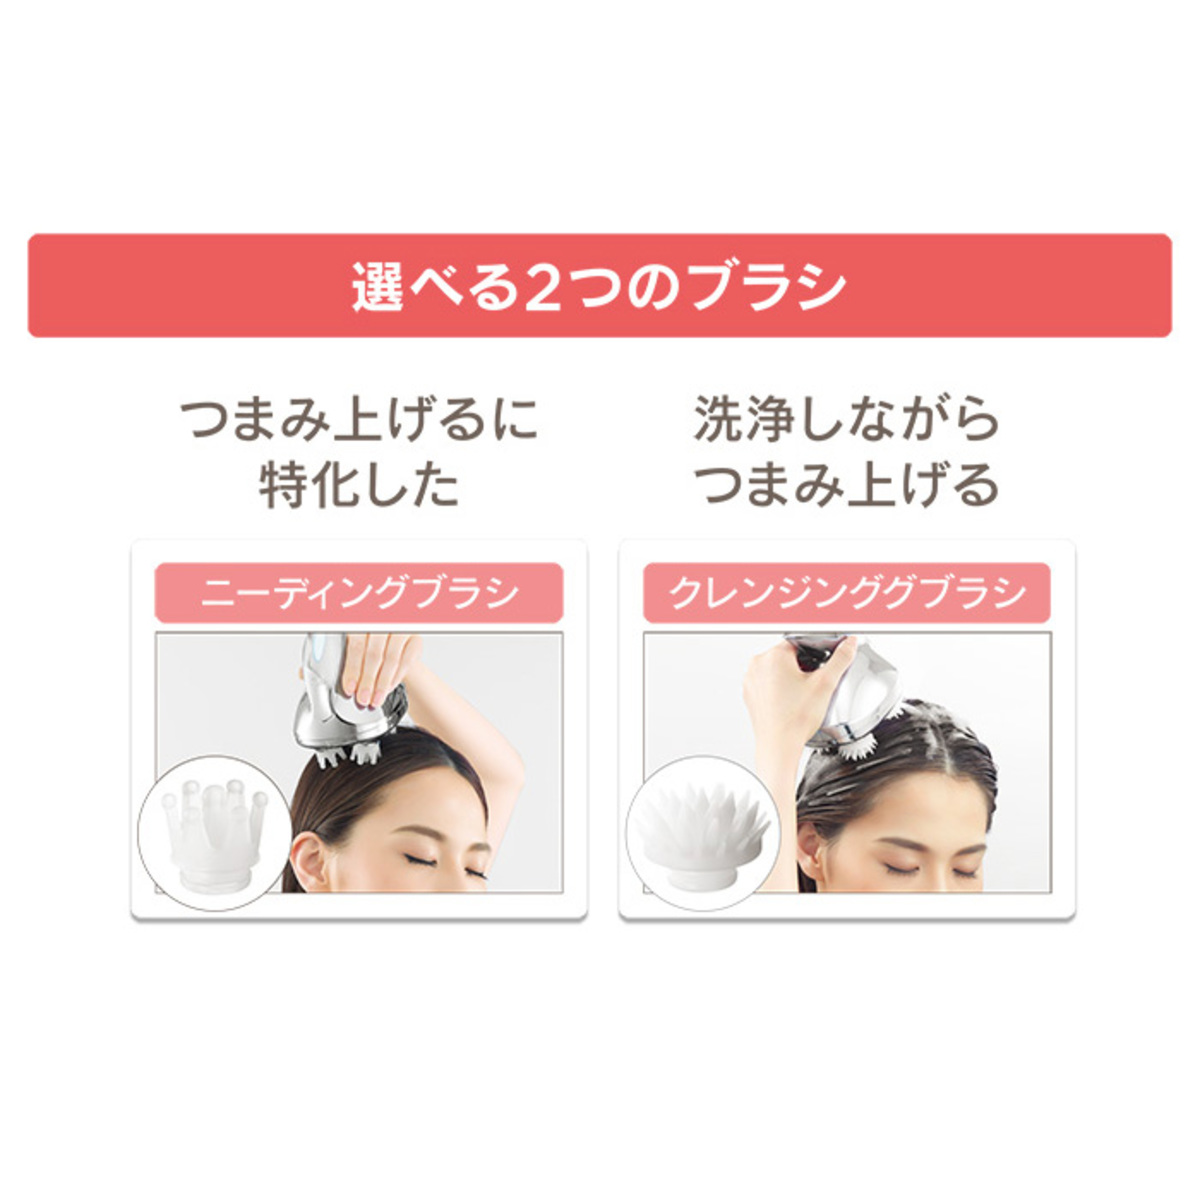 ReFa GRACE HEAD SPA[リファグレイスヘッドスパ] - QVC.jp